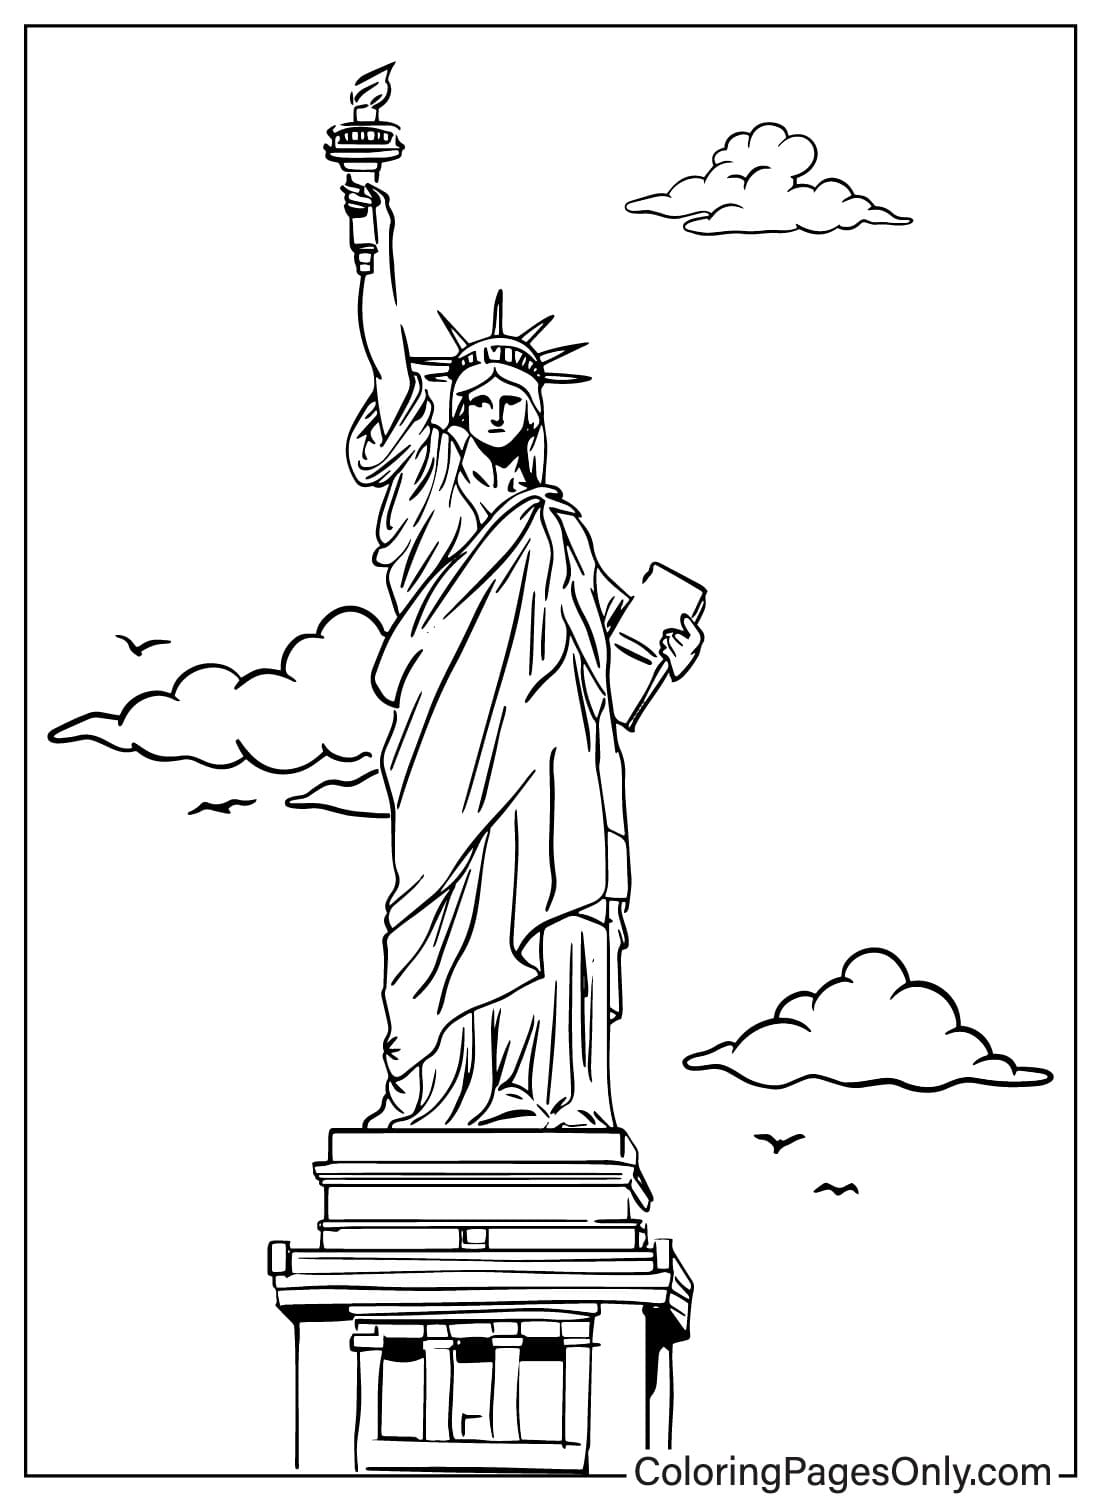 Foglio da colorare architettonico della Statua della Libertà dalla Statua della Libertà